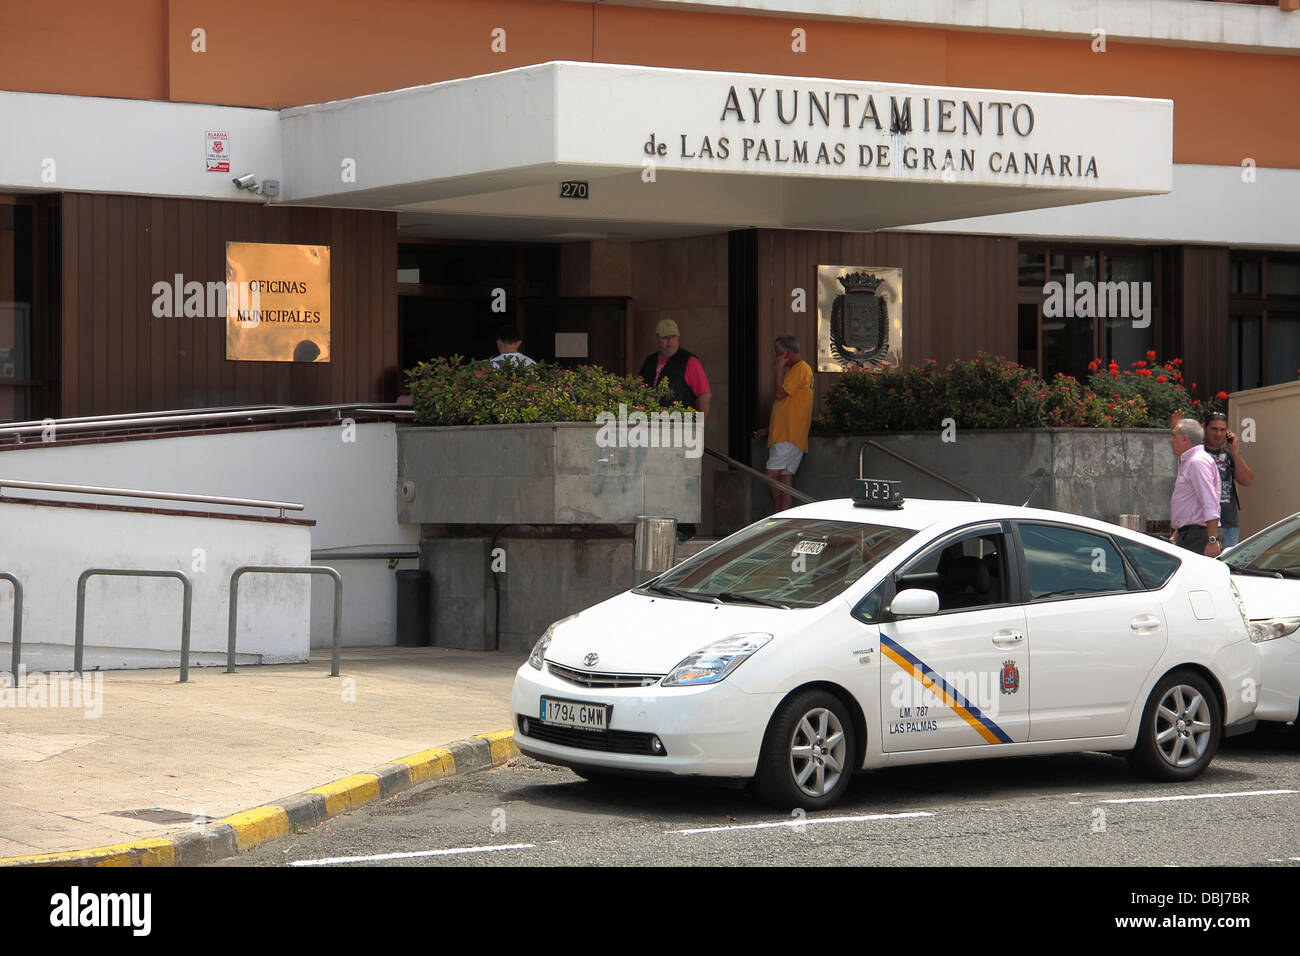 People entering and leaving the 'ayuntamiento'  (local council) building in Las Palmas, Gran Canaria. Stock Photo